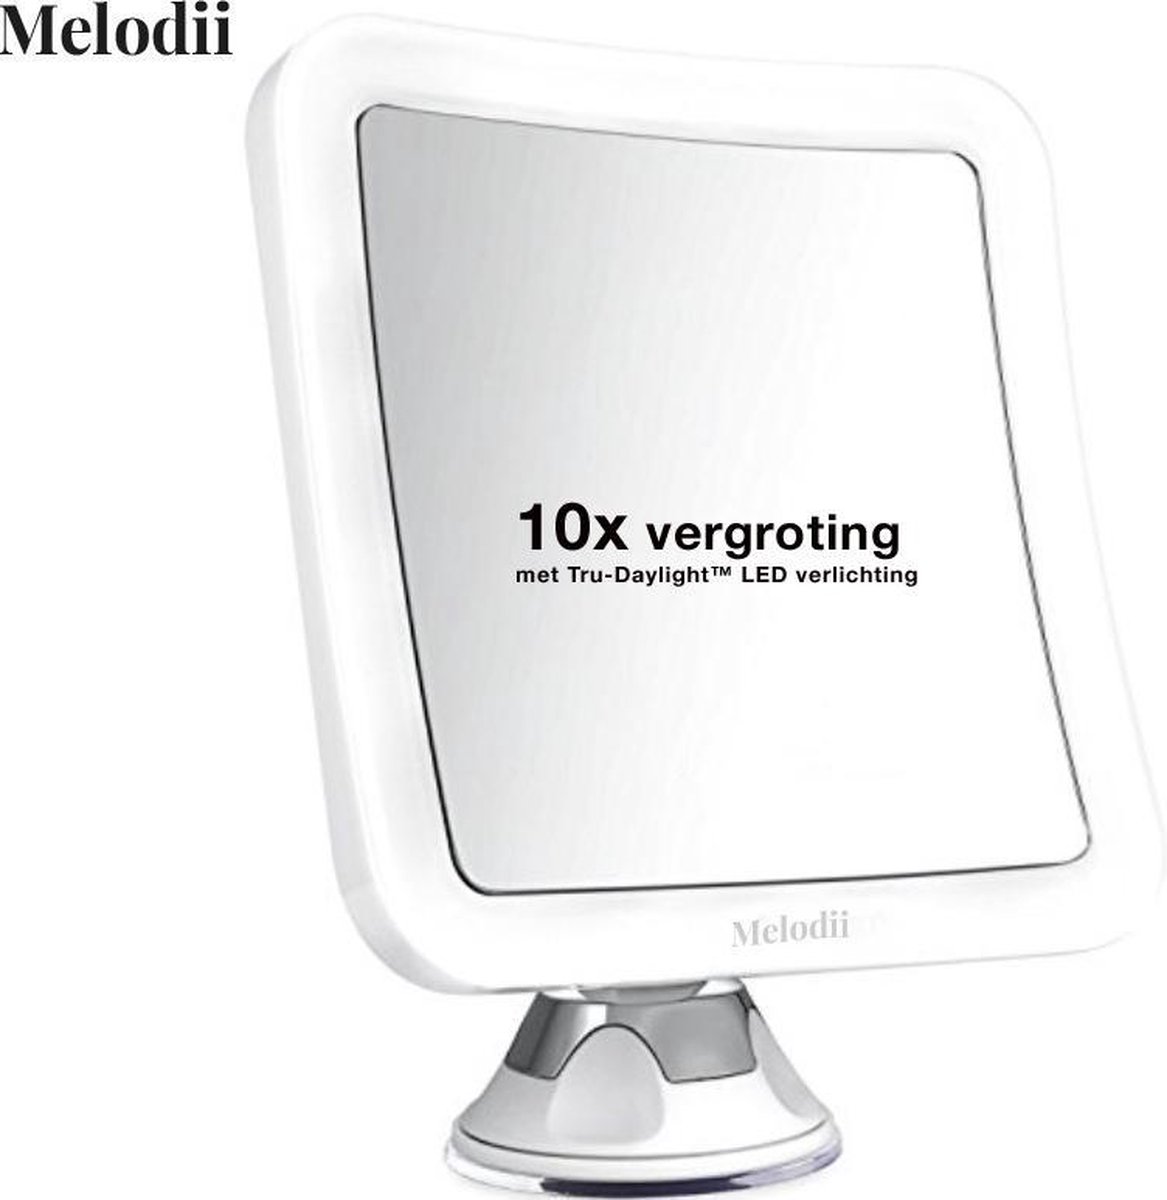 Melodii ML10X  - Make Up Spiegel met LED Verlichting  - Scheerspiegel - 10x Vergroting - Met Tru-Daylight verlichting - Voor hem en voor haar - Melodii